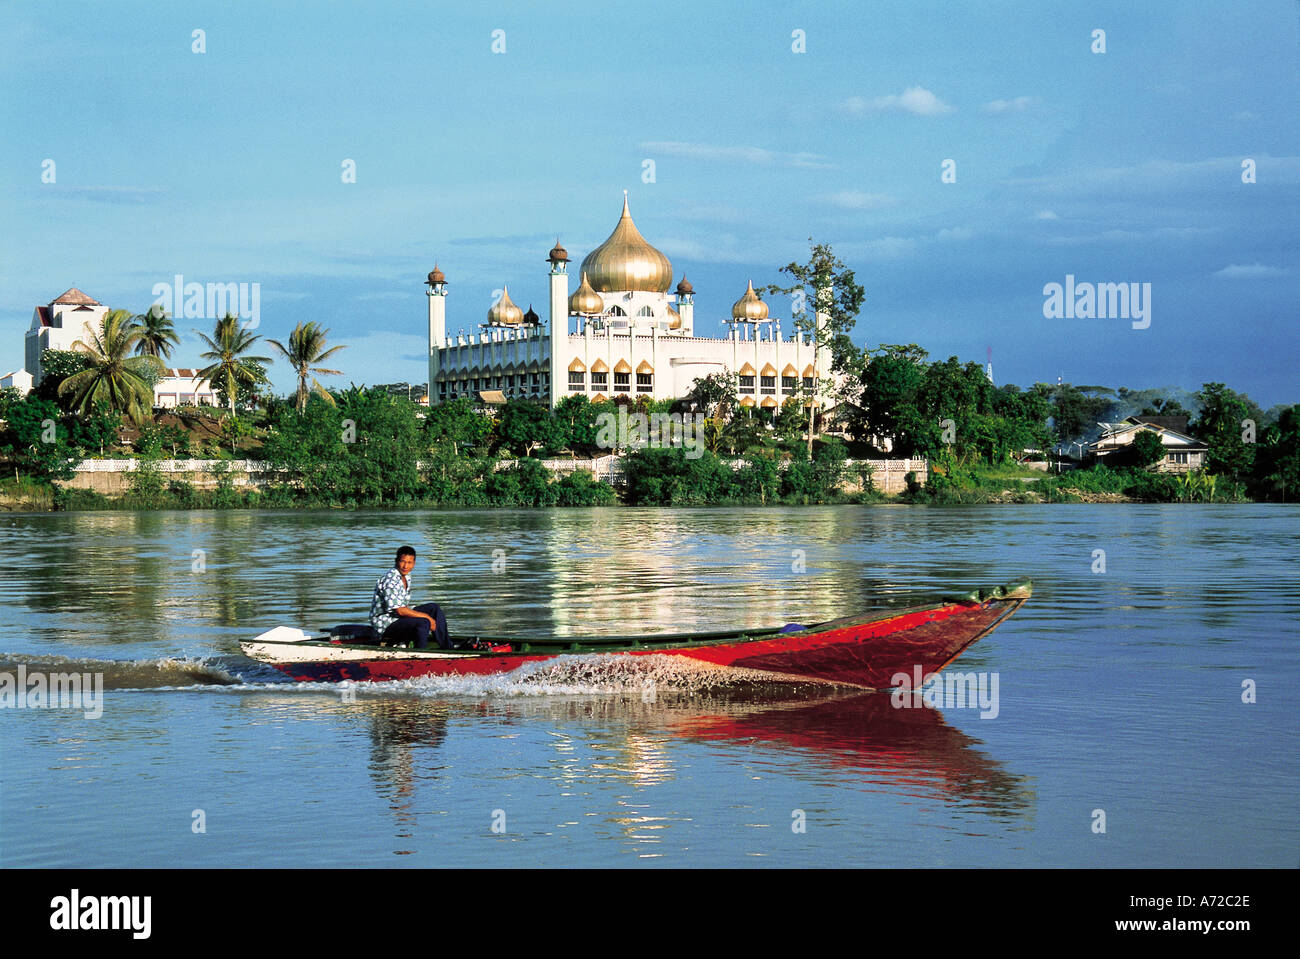 Bateau local sur la rivière Sarawak et de l'État de Sarawak Kuching Malaisie Mosquée Banque D'Images